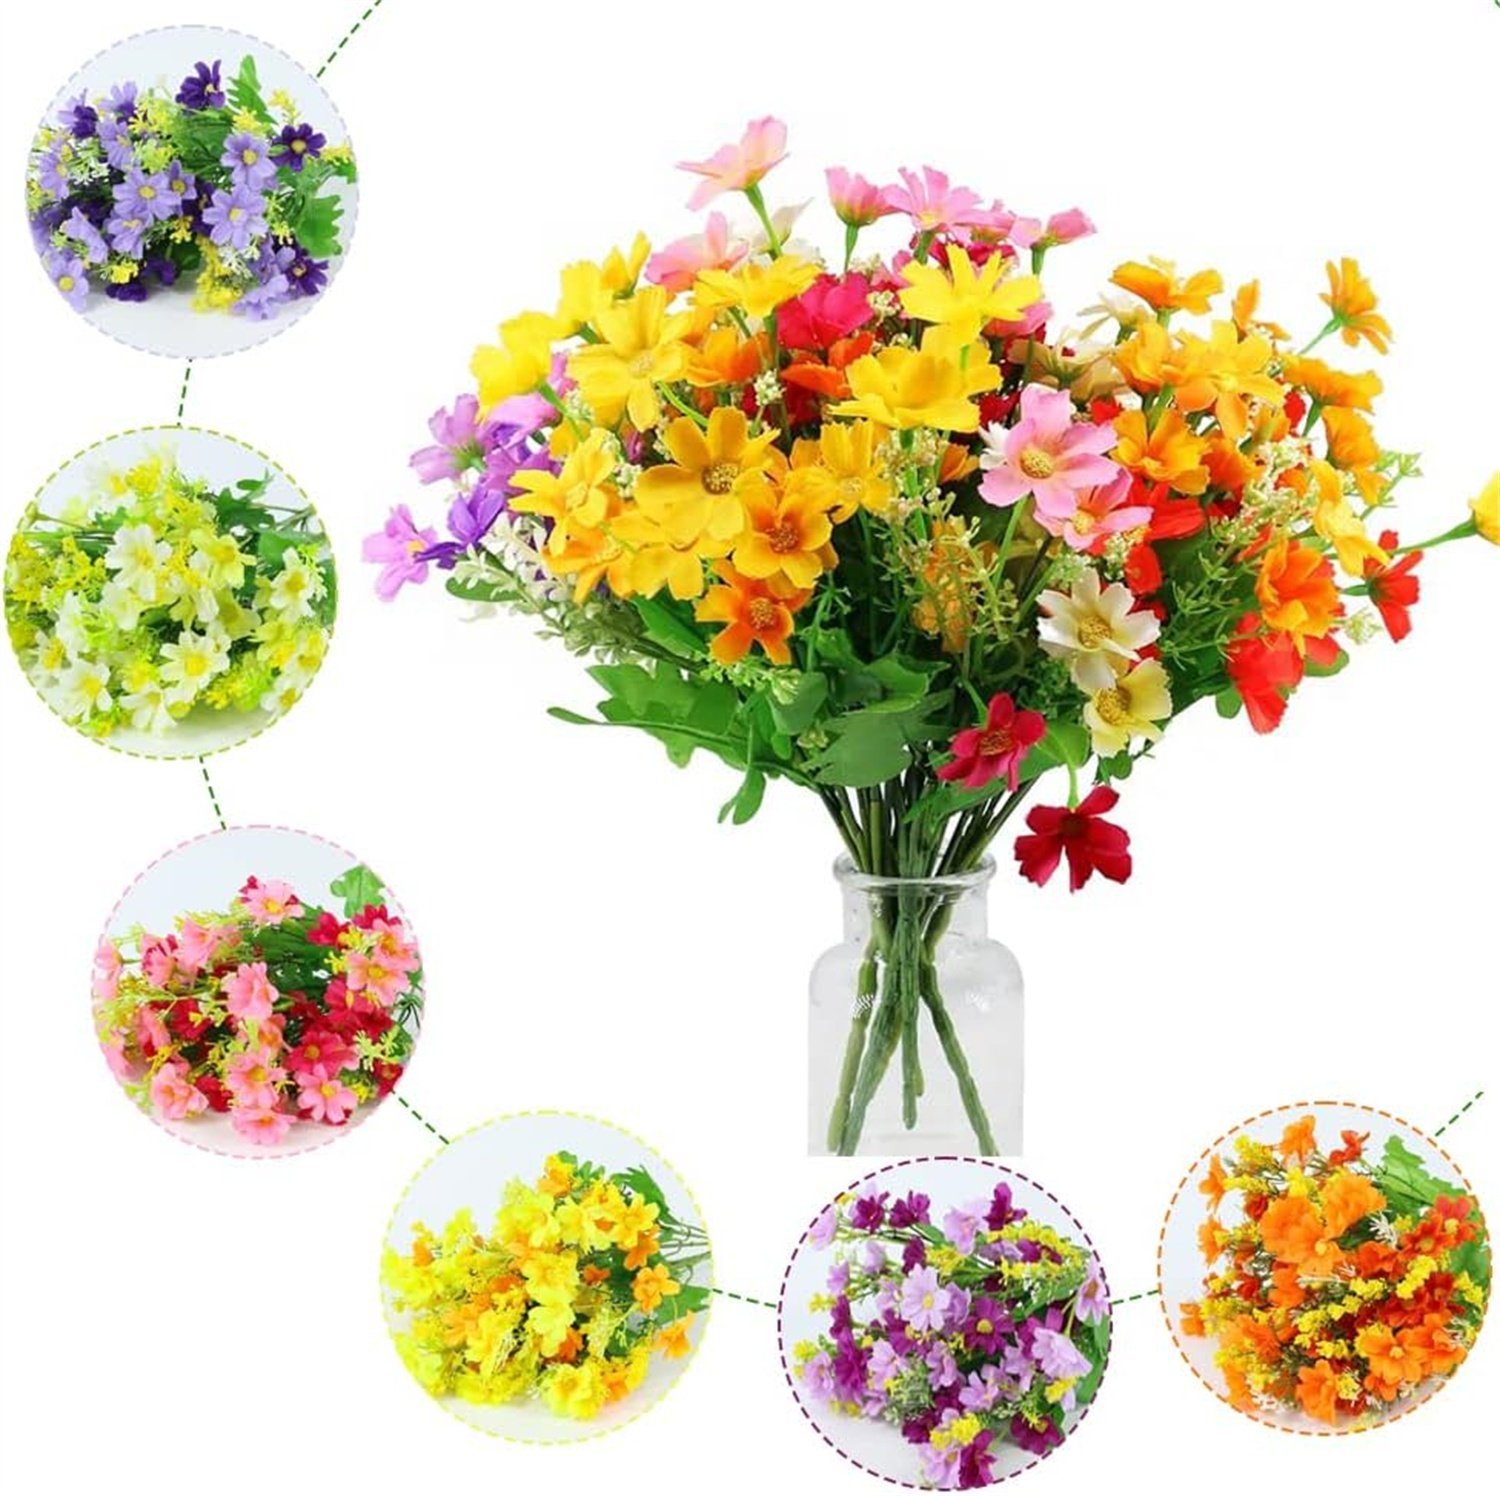 12 Zimmerpflanze 6 Seidengänseblümchen, Blumen, Künstliche autolock Farben Kleine Künstliche Bündel